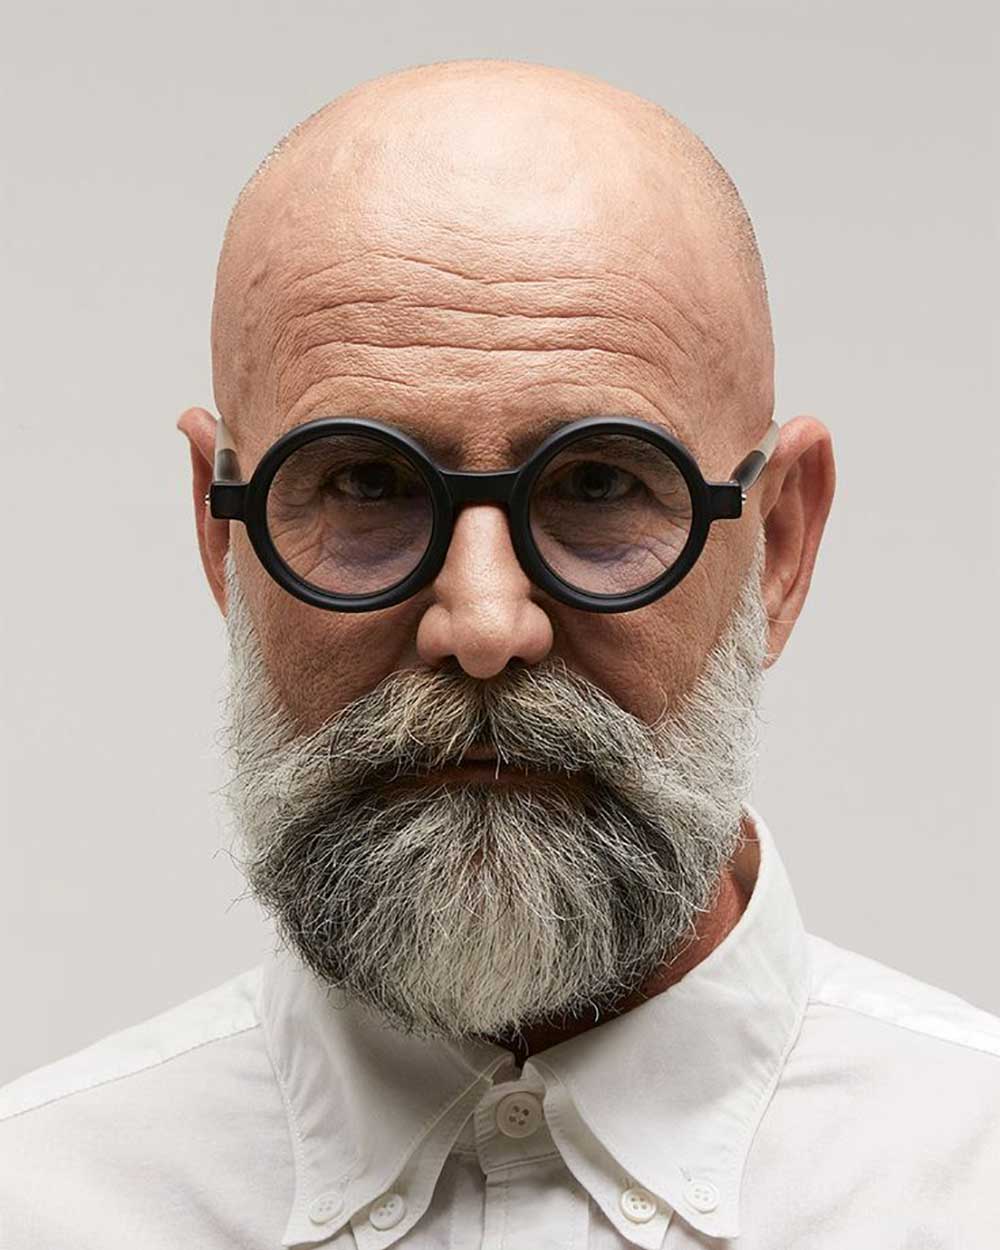 Bald man wearing round black glasses frame